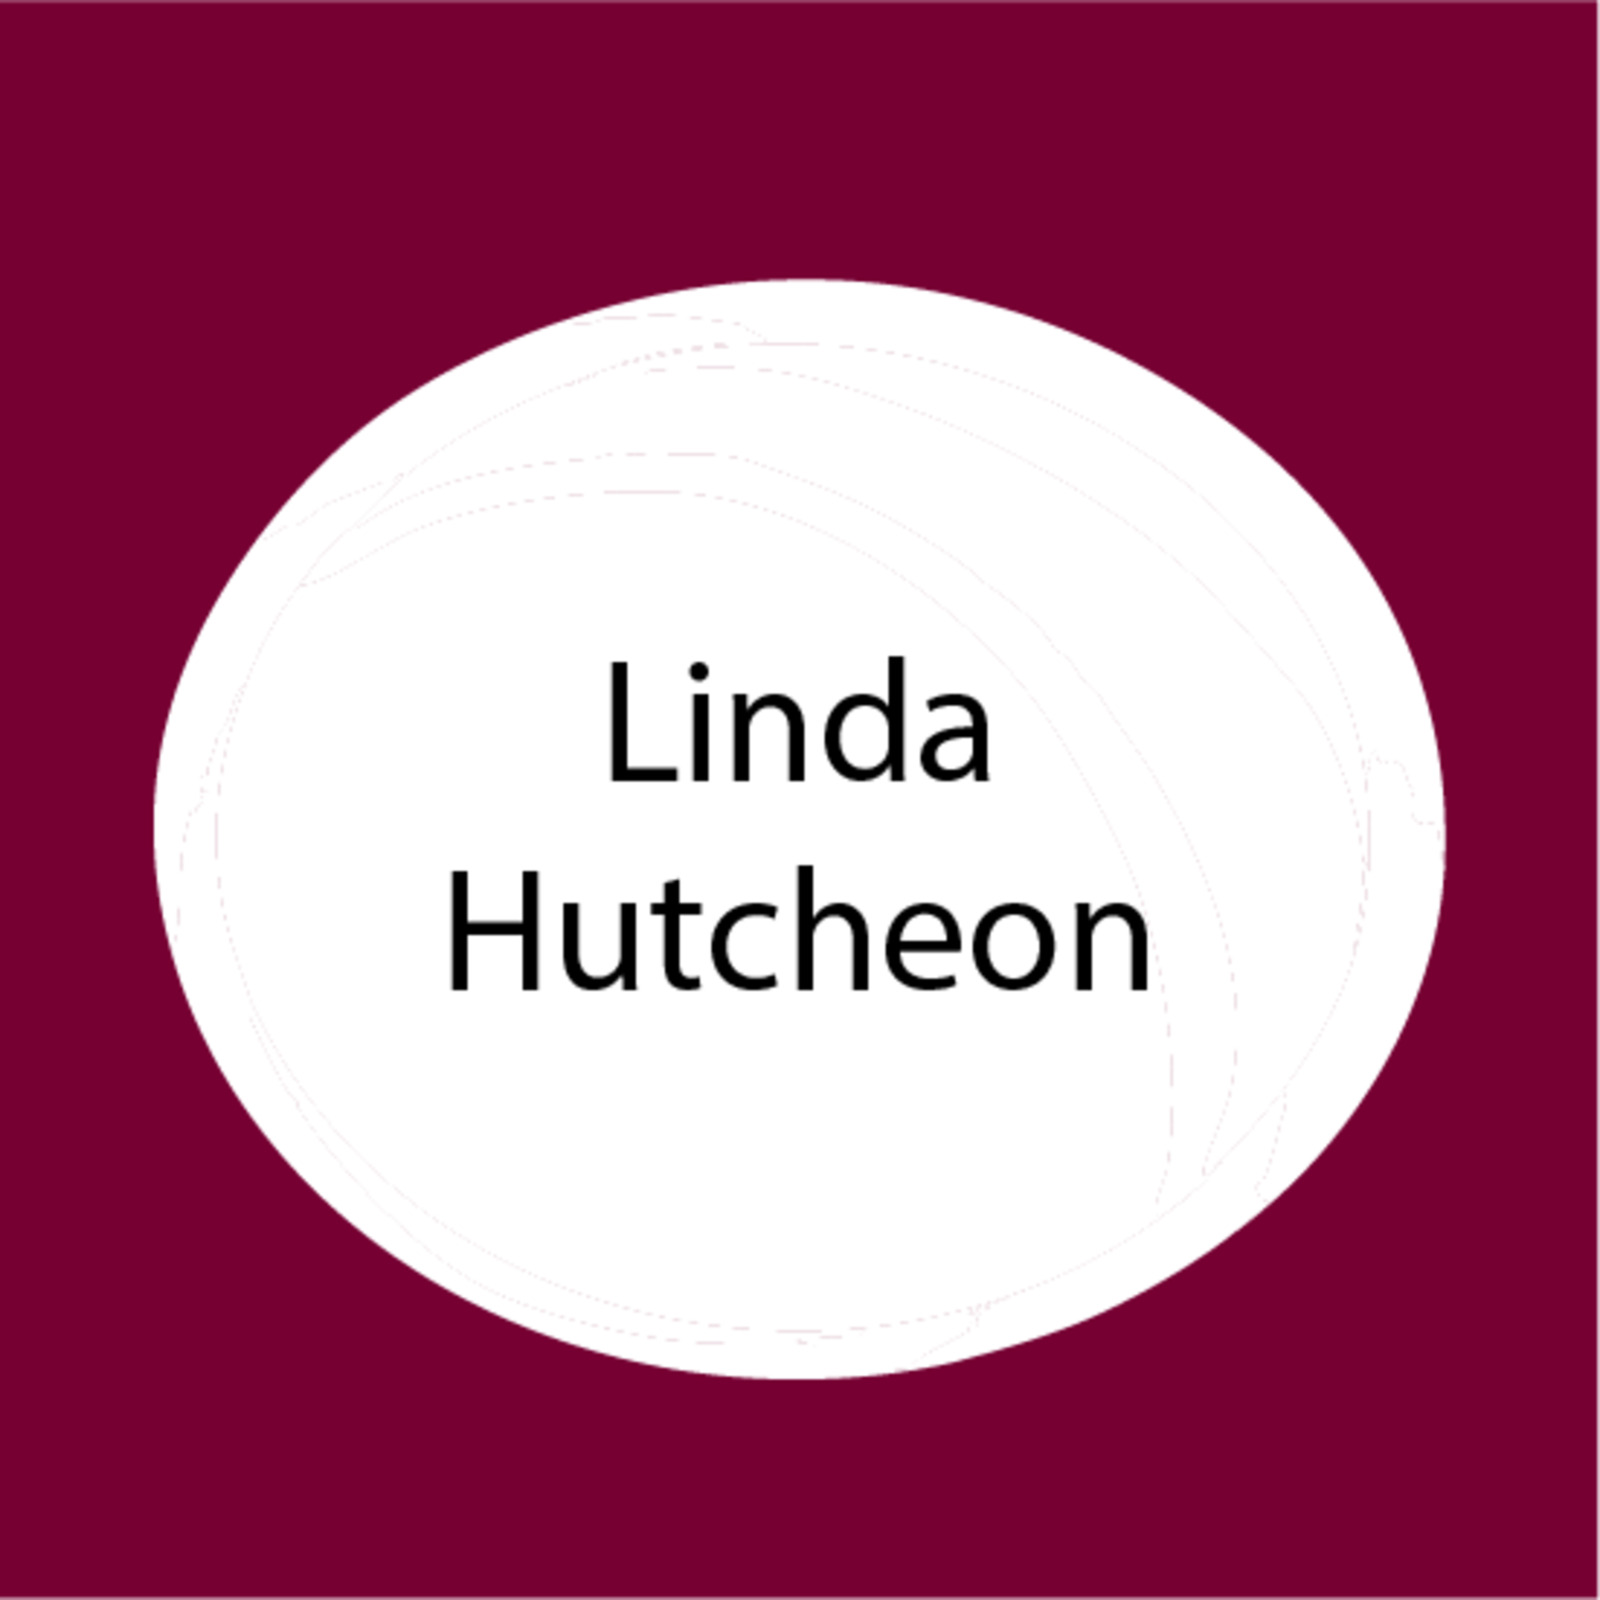 Linda Hutcheon